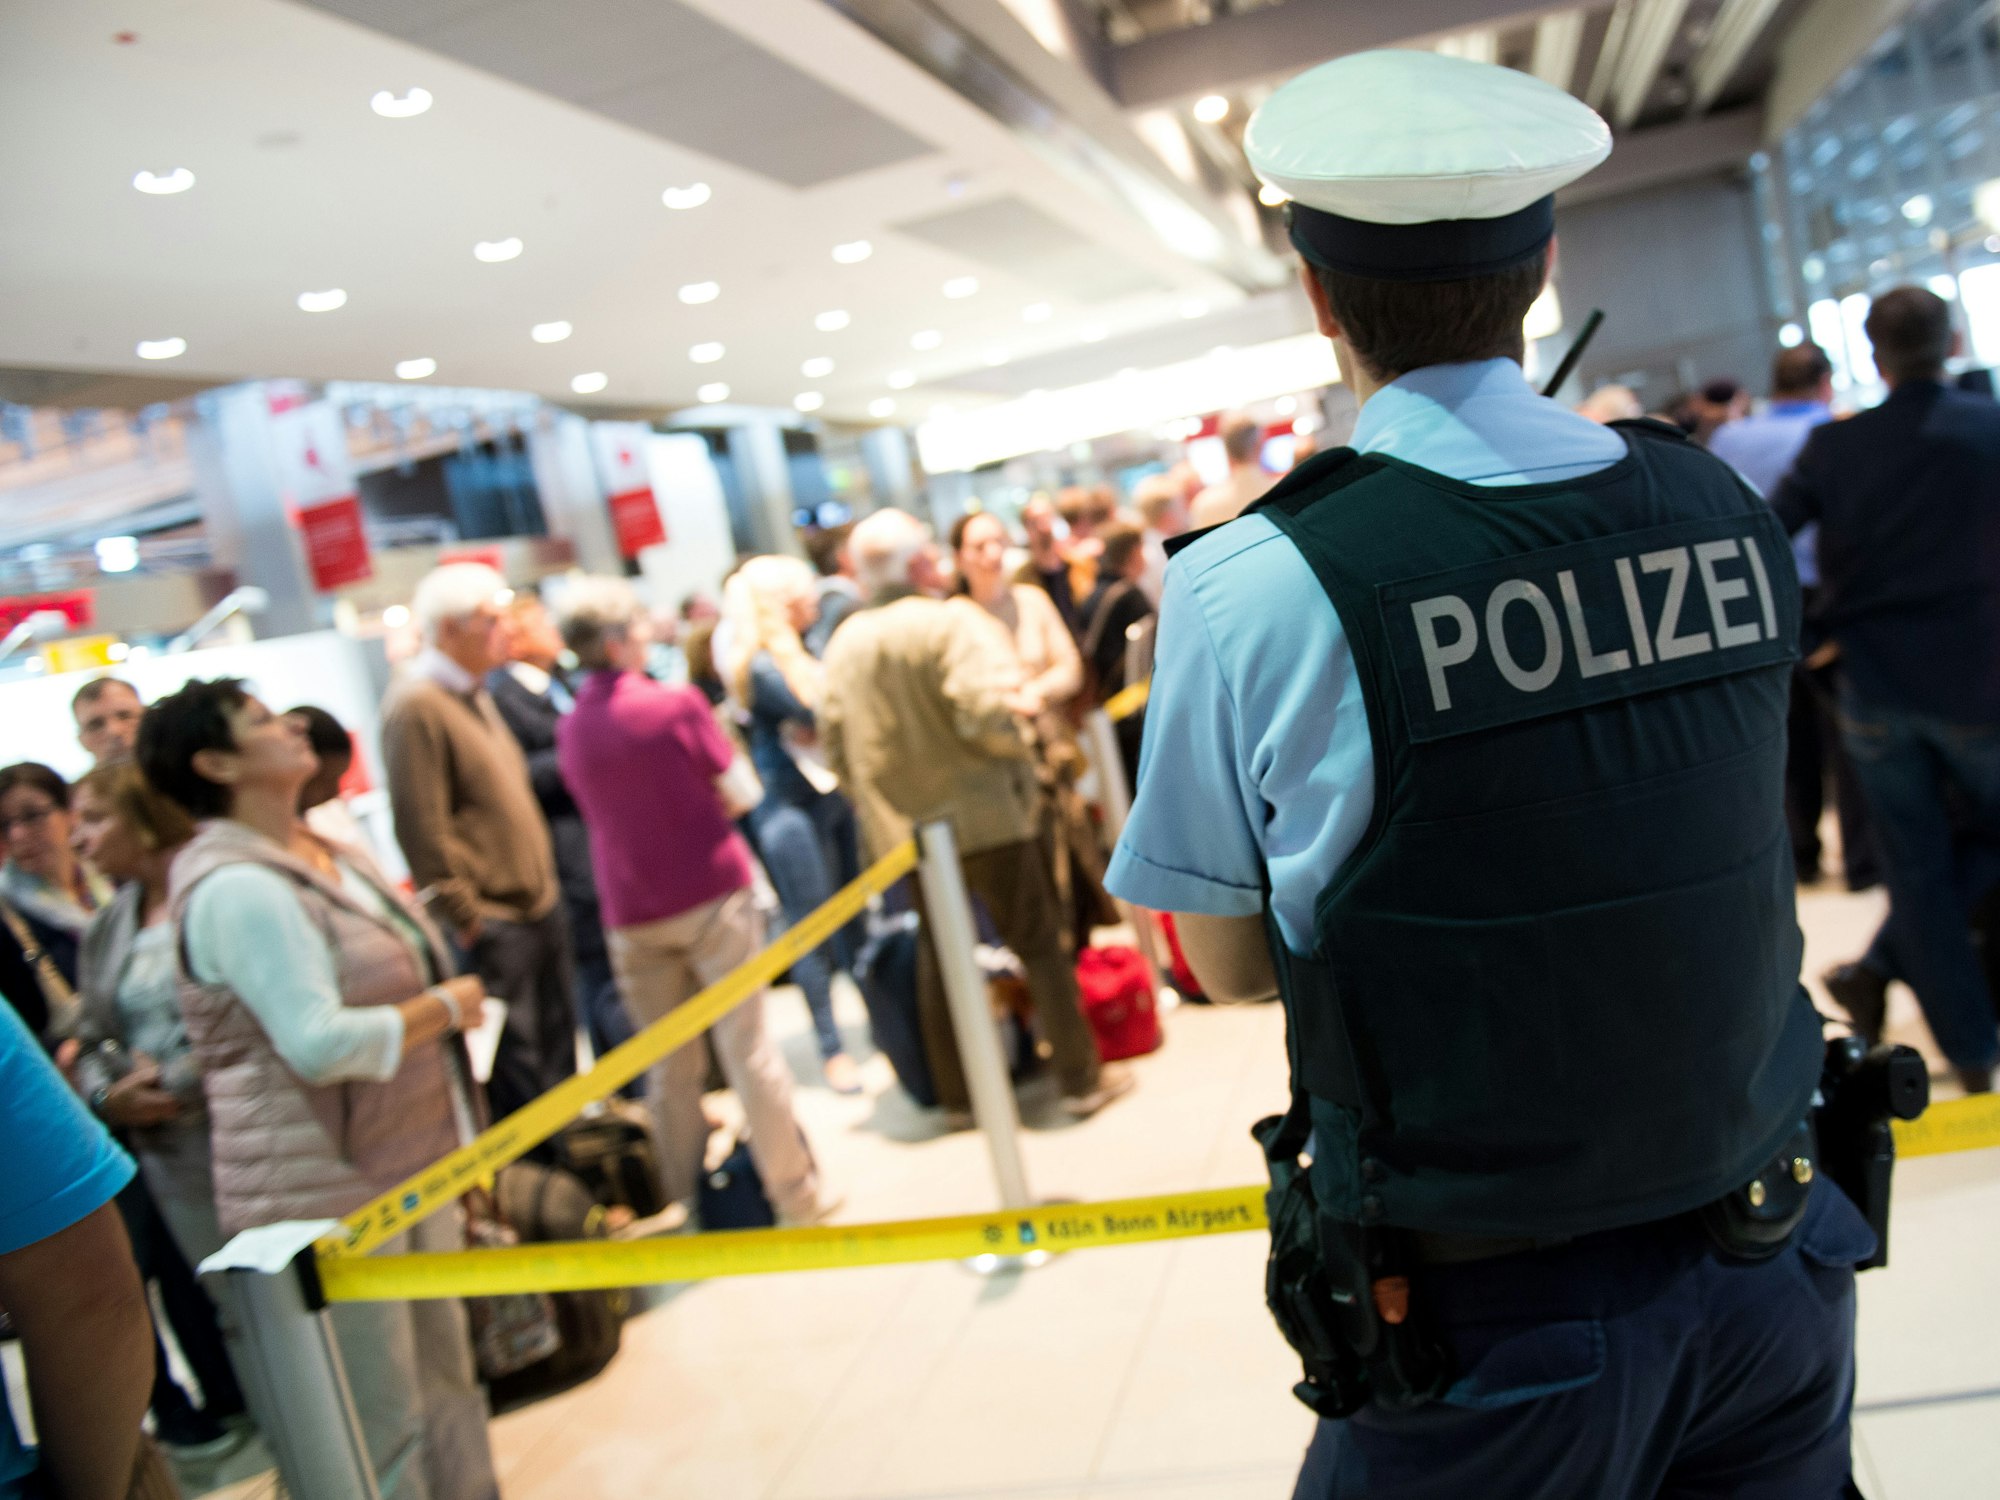 Ein Polizist steht vor dem Sicherheitsbereich im Flughafen Köln/Bonn.